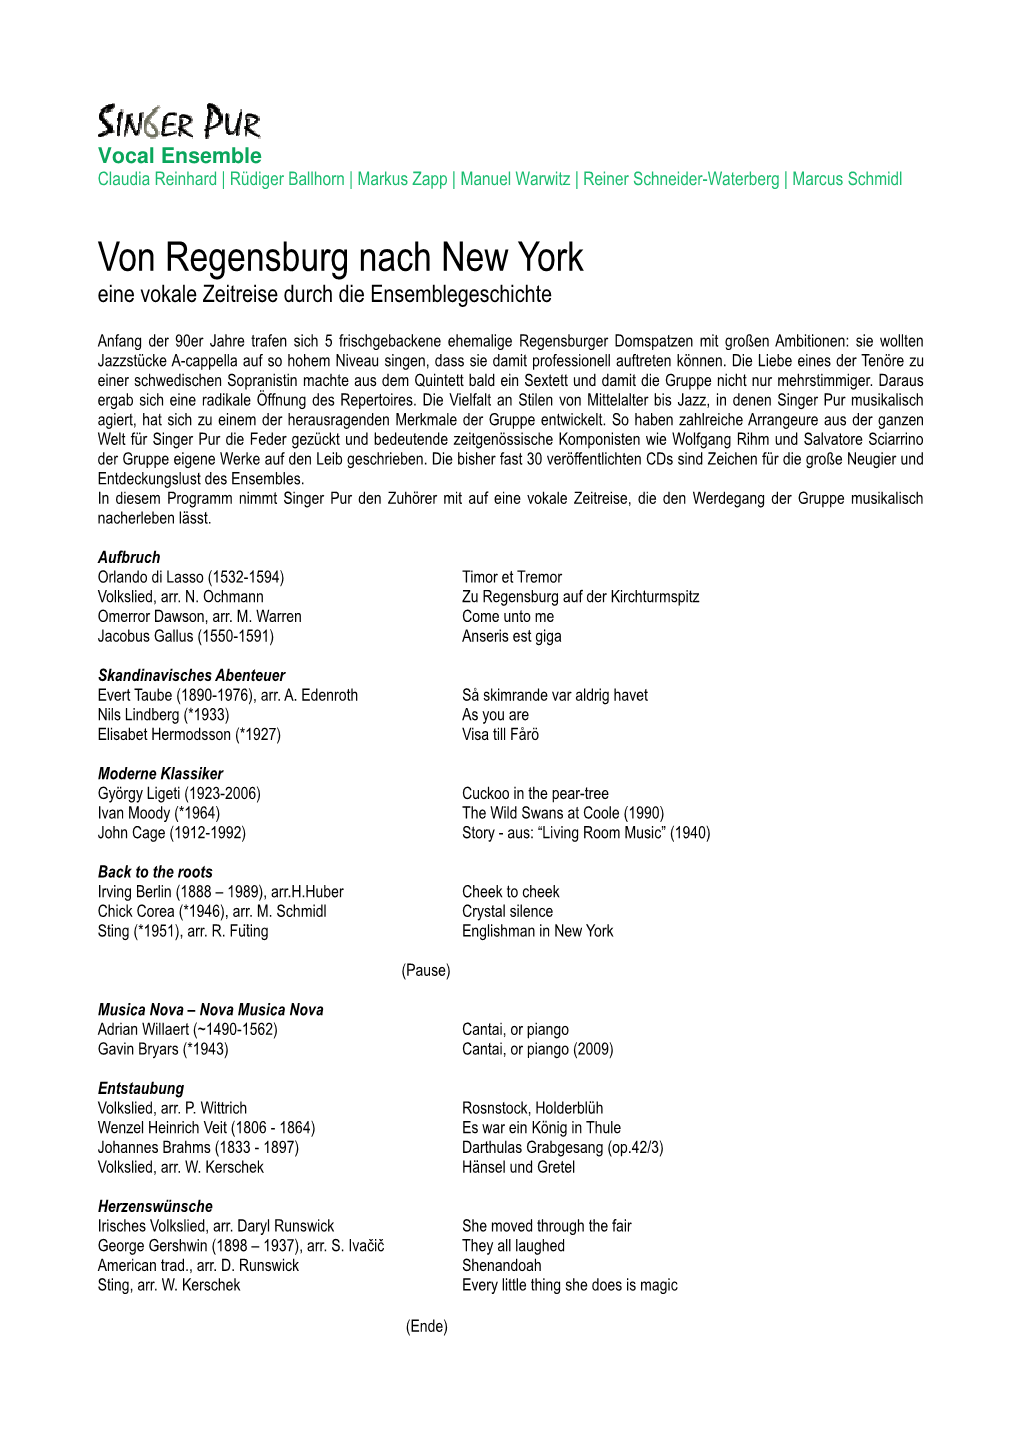 Von Regensburg Nach New York Eine Vokale Zeitreise Durch Die Ensemblegeschichte